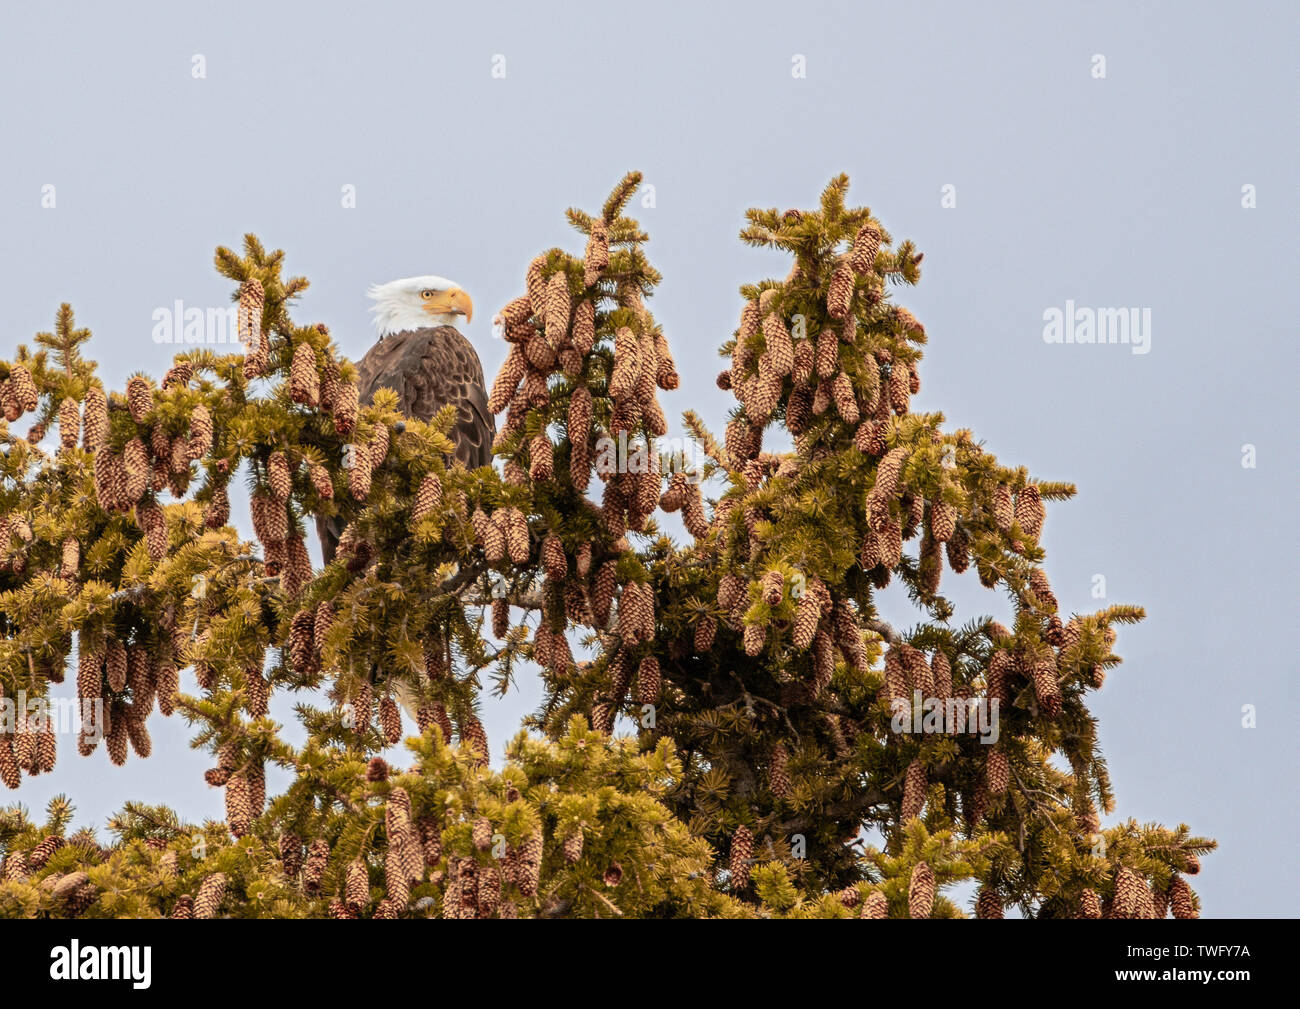 Bald Eagle in an Engelmann Spruce tree, Stock Photo